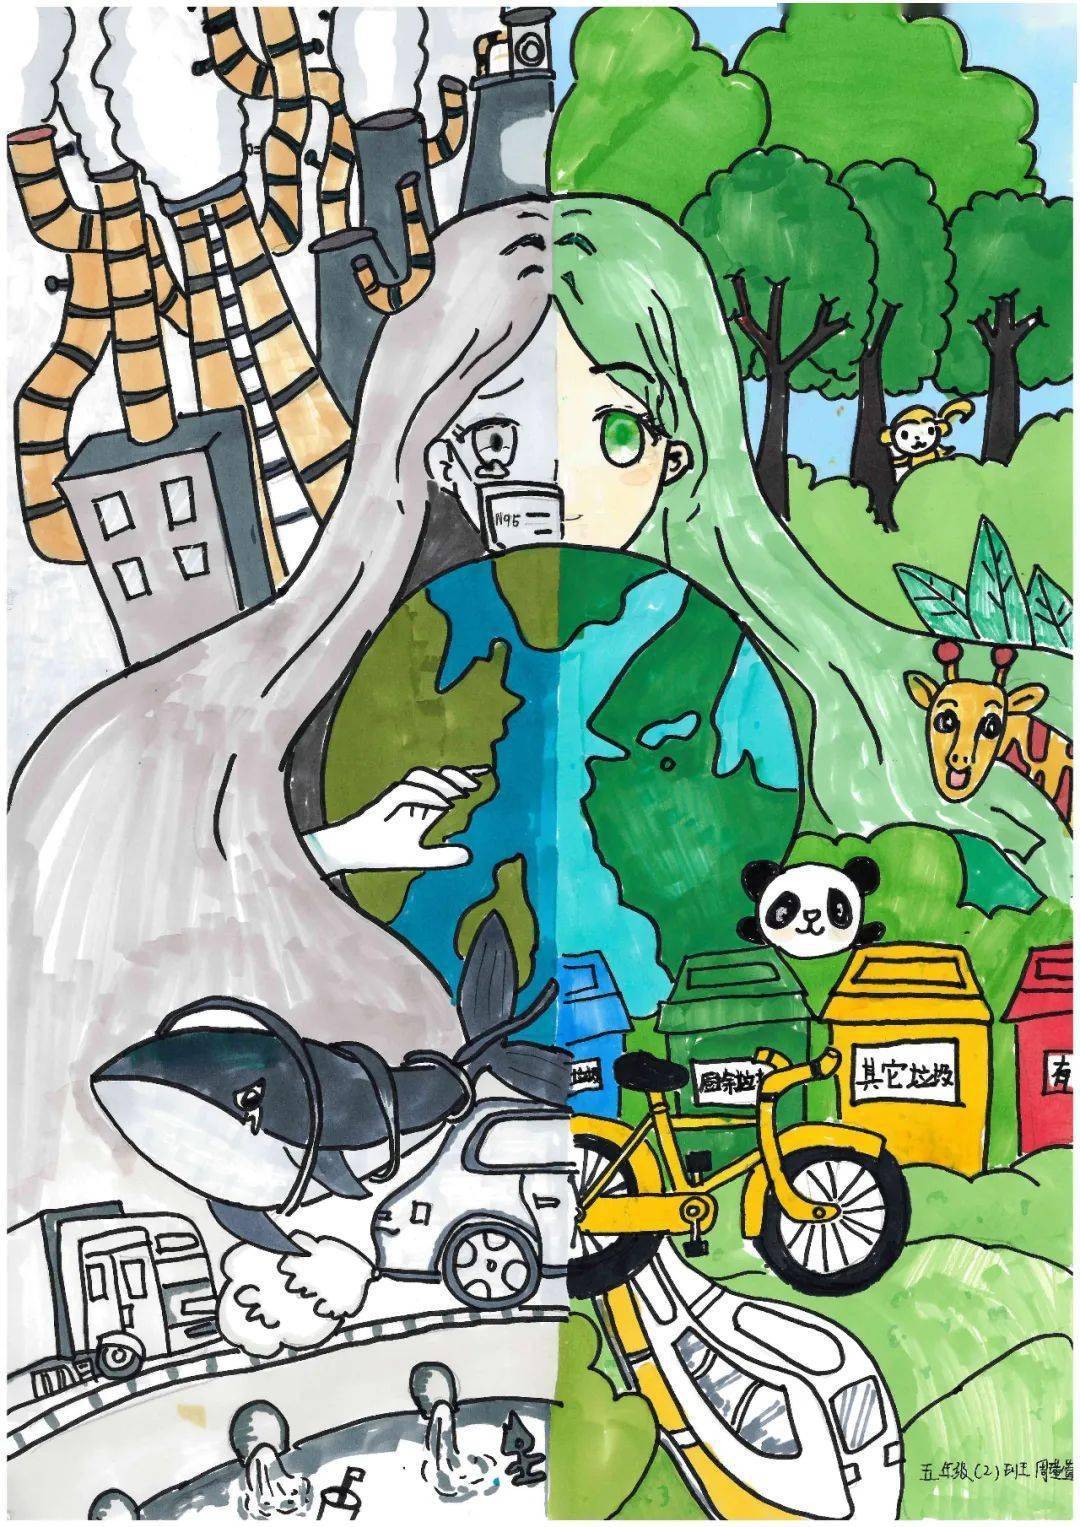 【共建绿色家庭 共享绿色家园】固安县妇联主题绘画优秀作品展示(一)